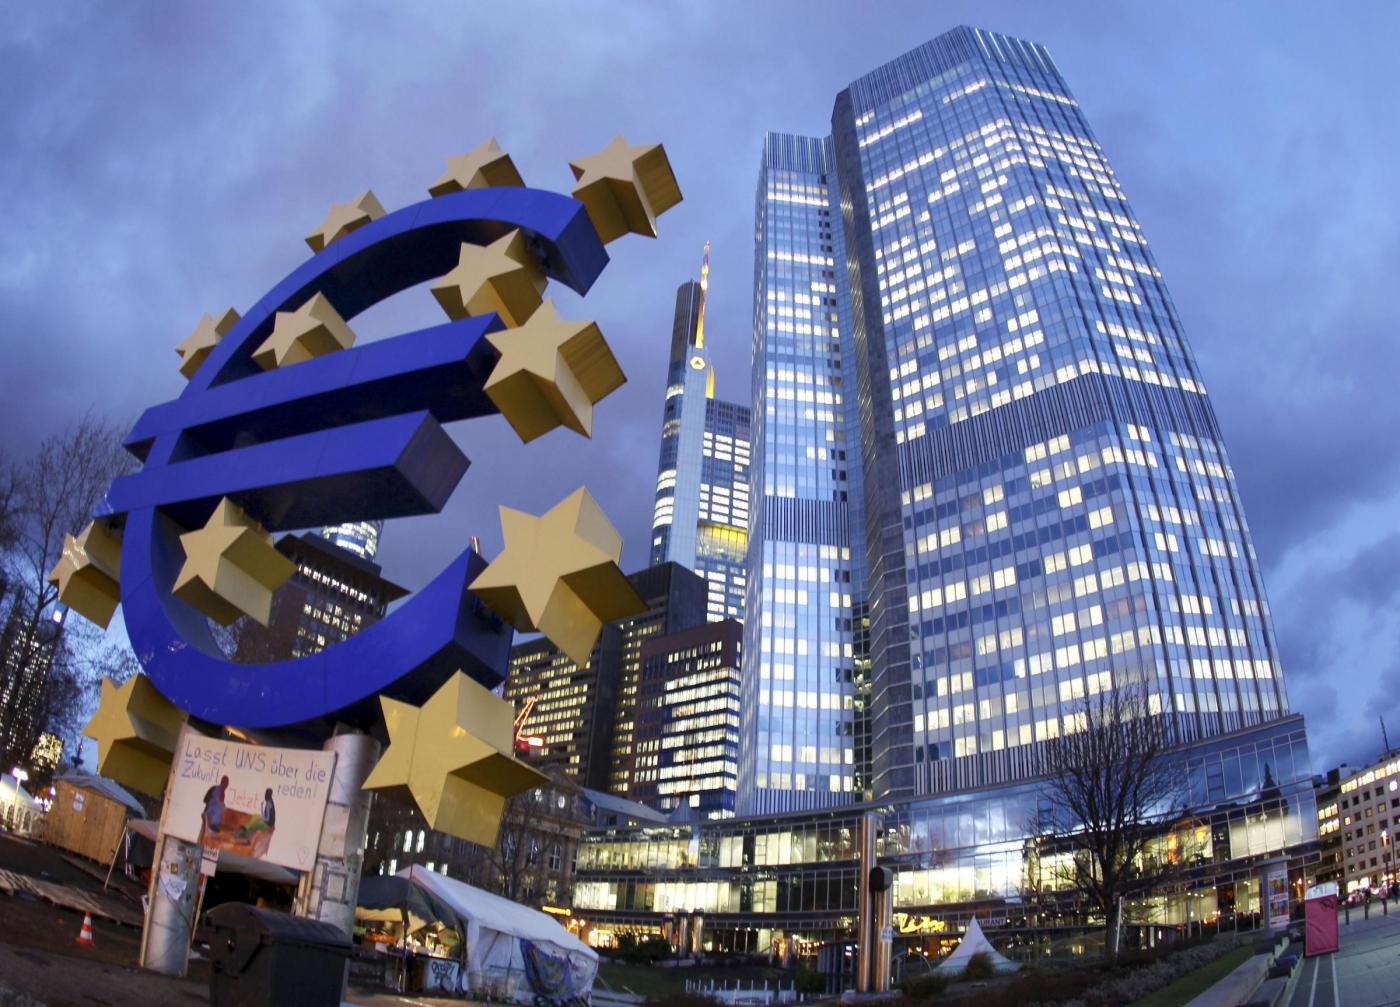 Evropska centralna banka ECB